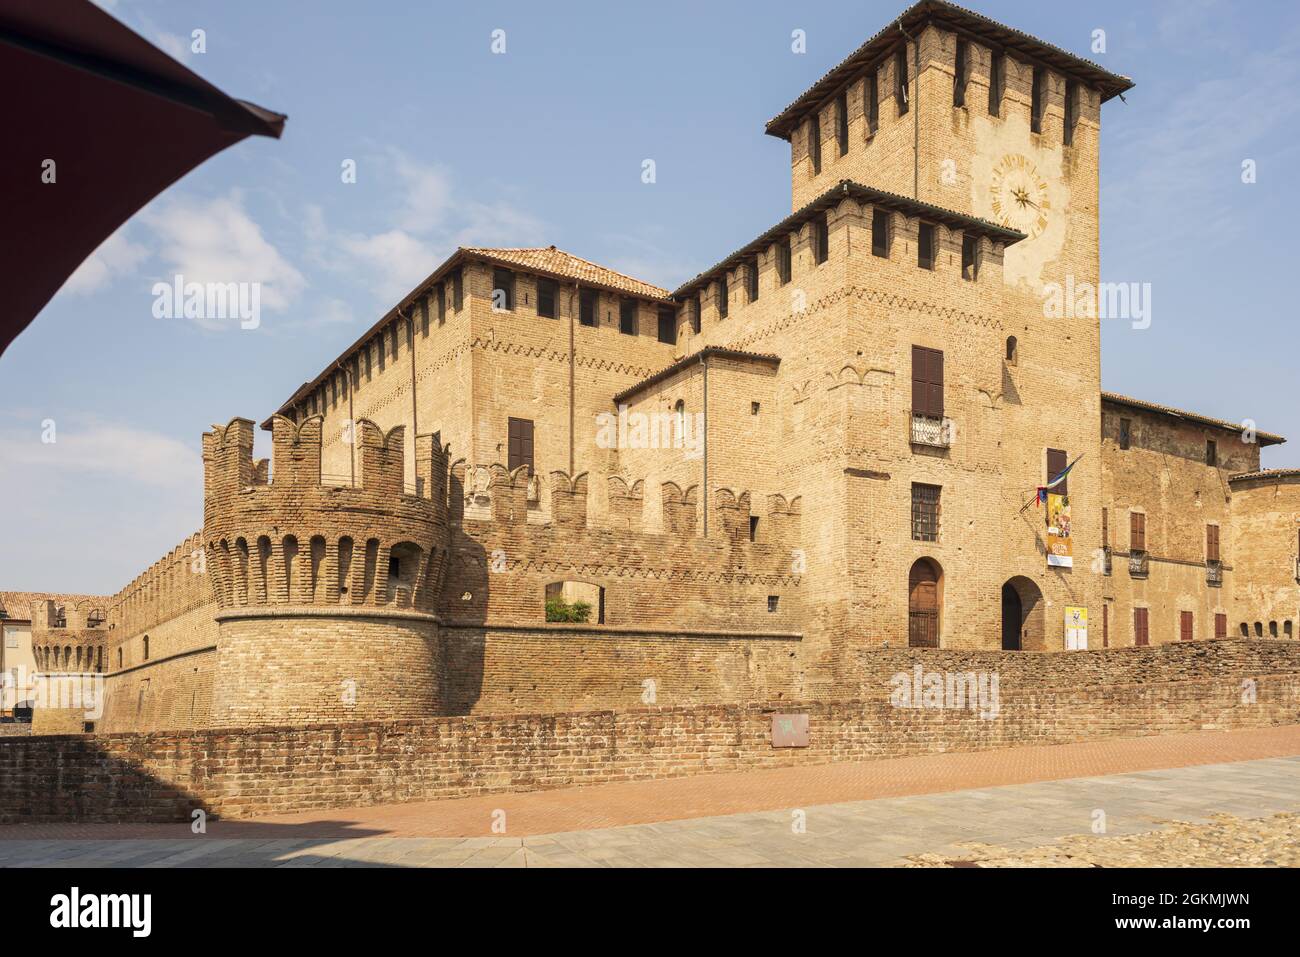 castello fontanellato italia parma 13 Stock Photo